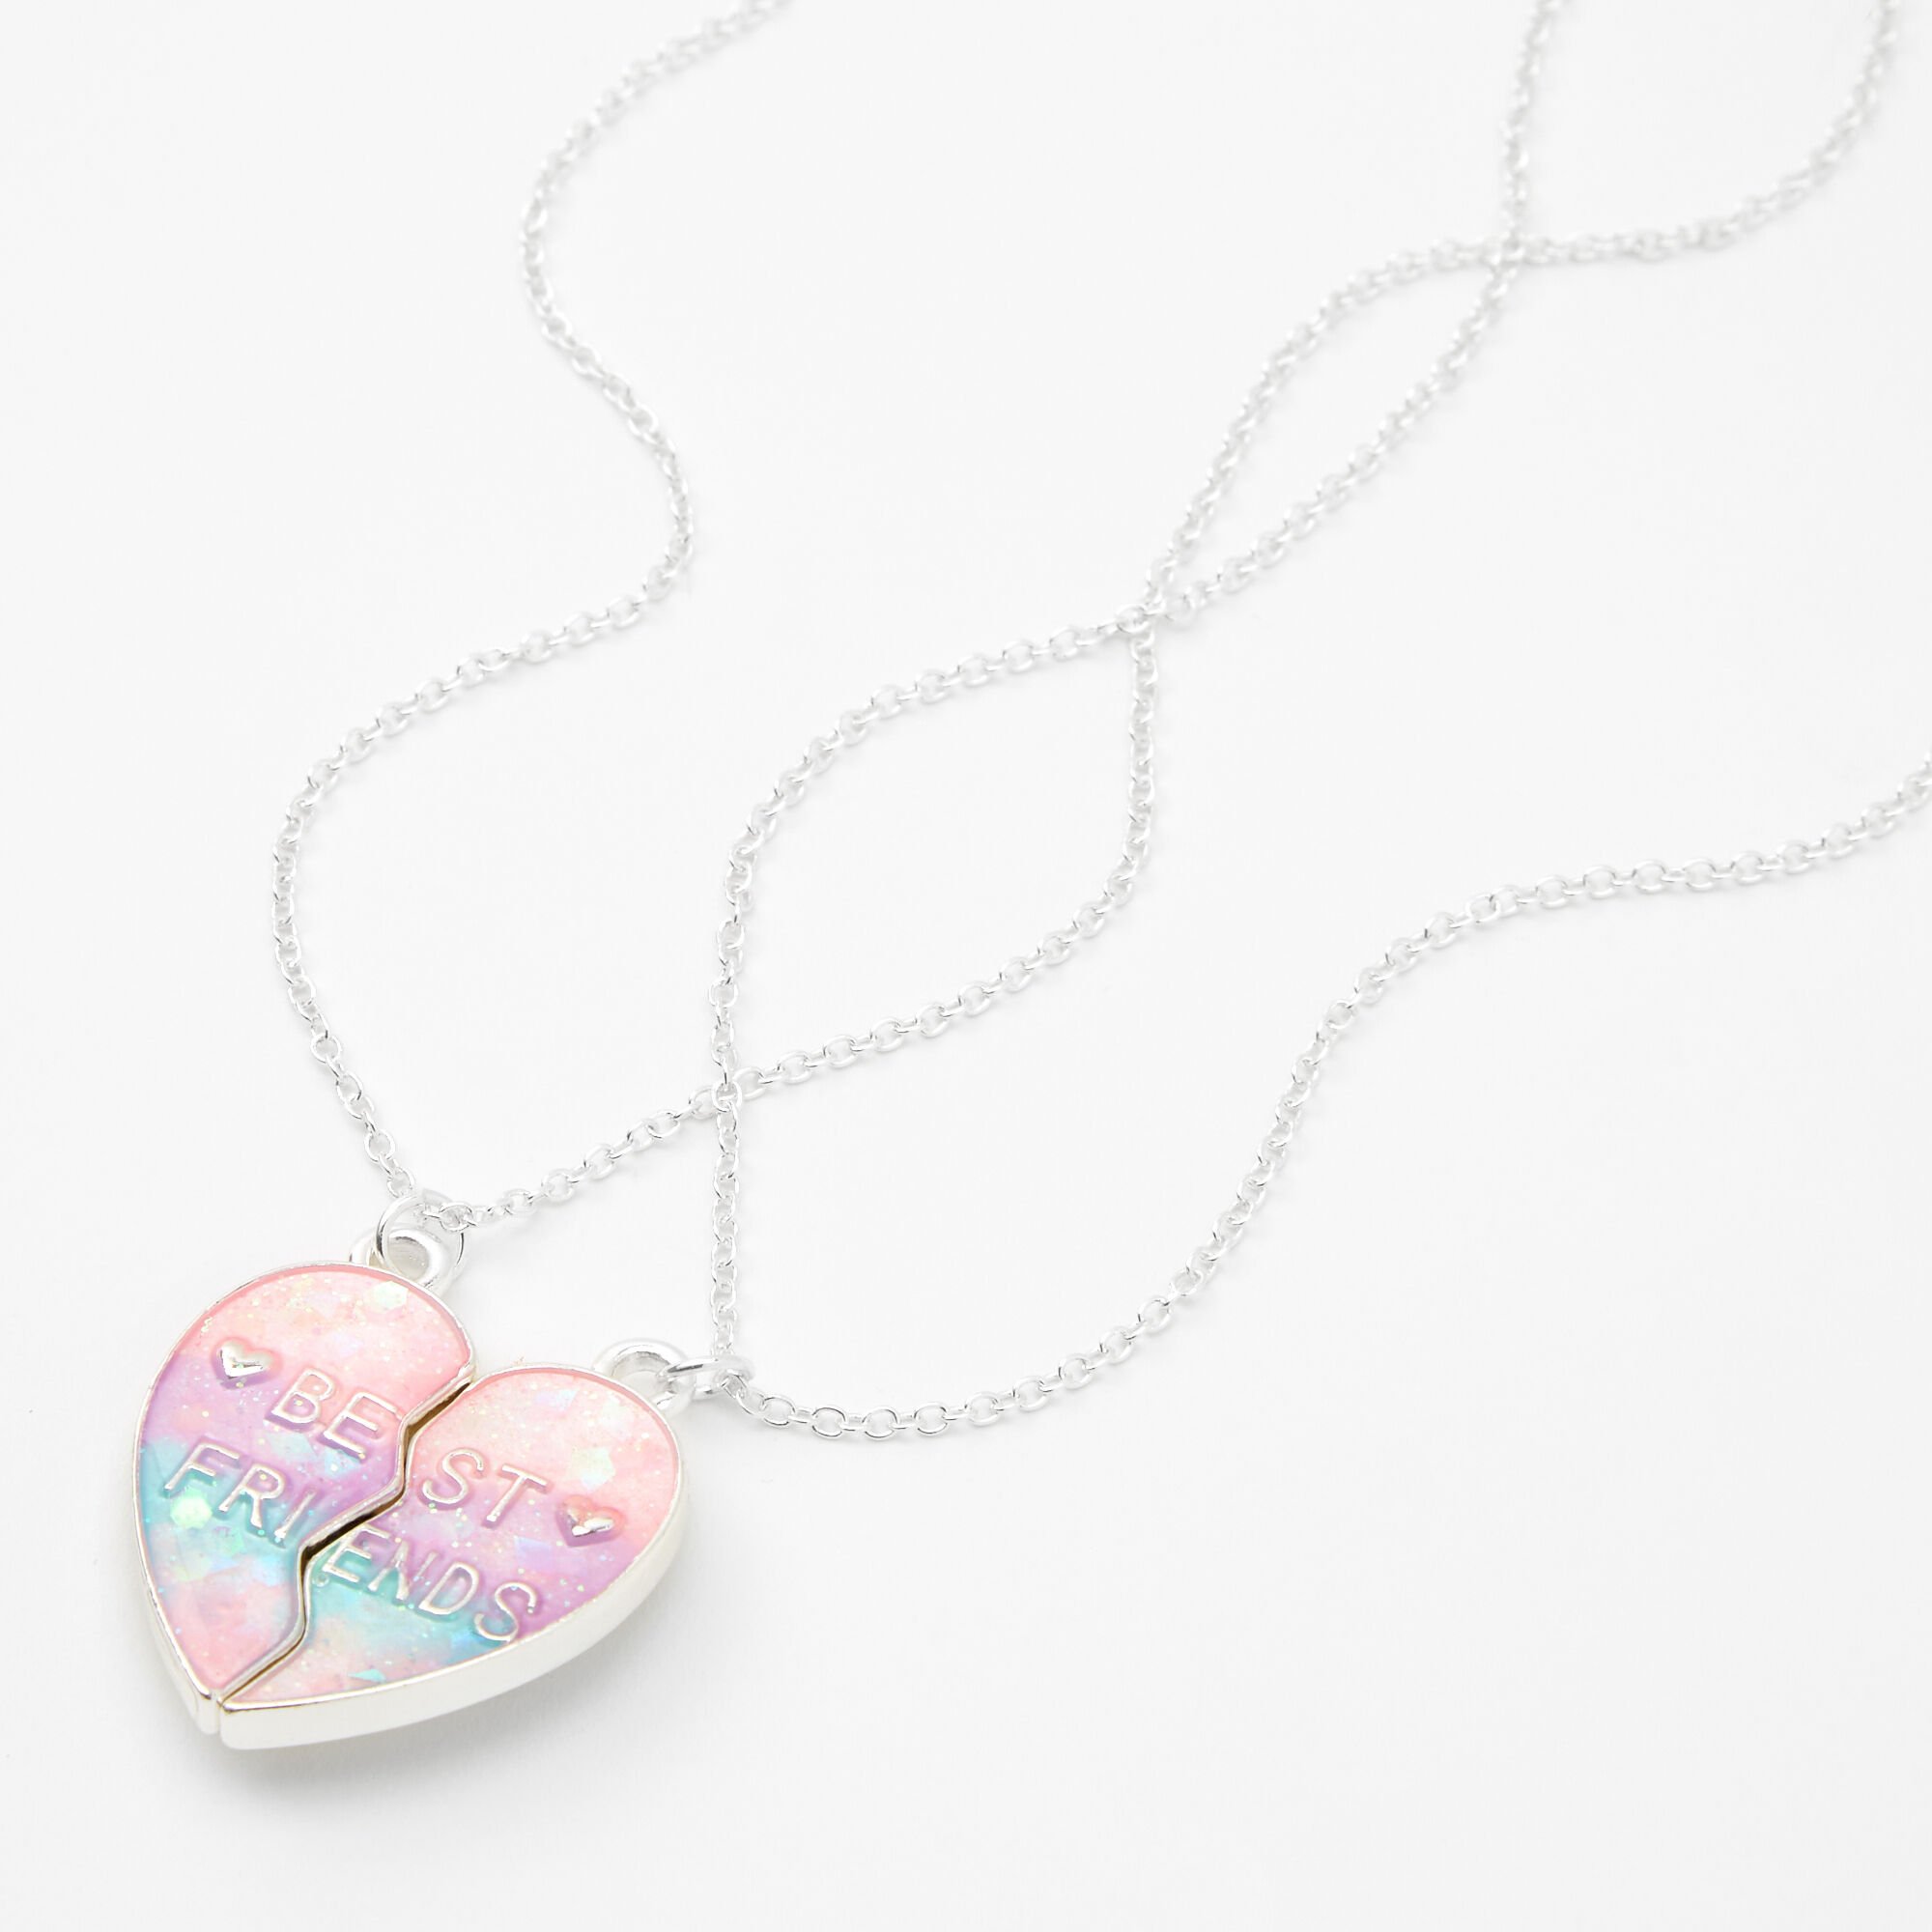 View Claires Best Friends Pastel Ombre Split Heart Pendant Necklaces 2 Pack Silver information